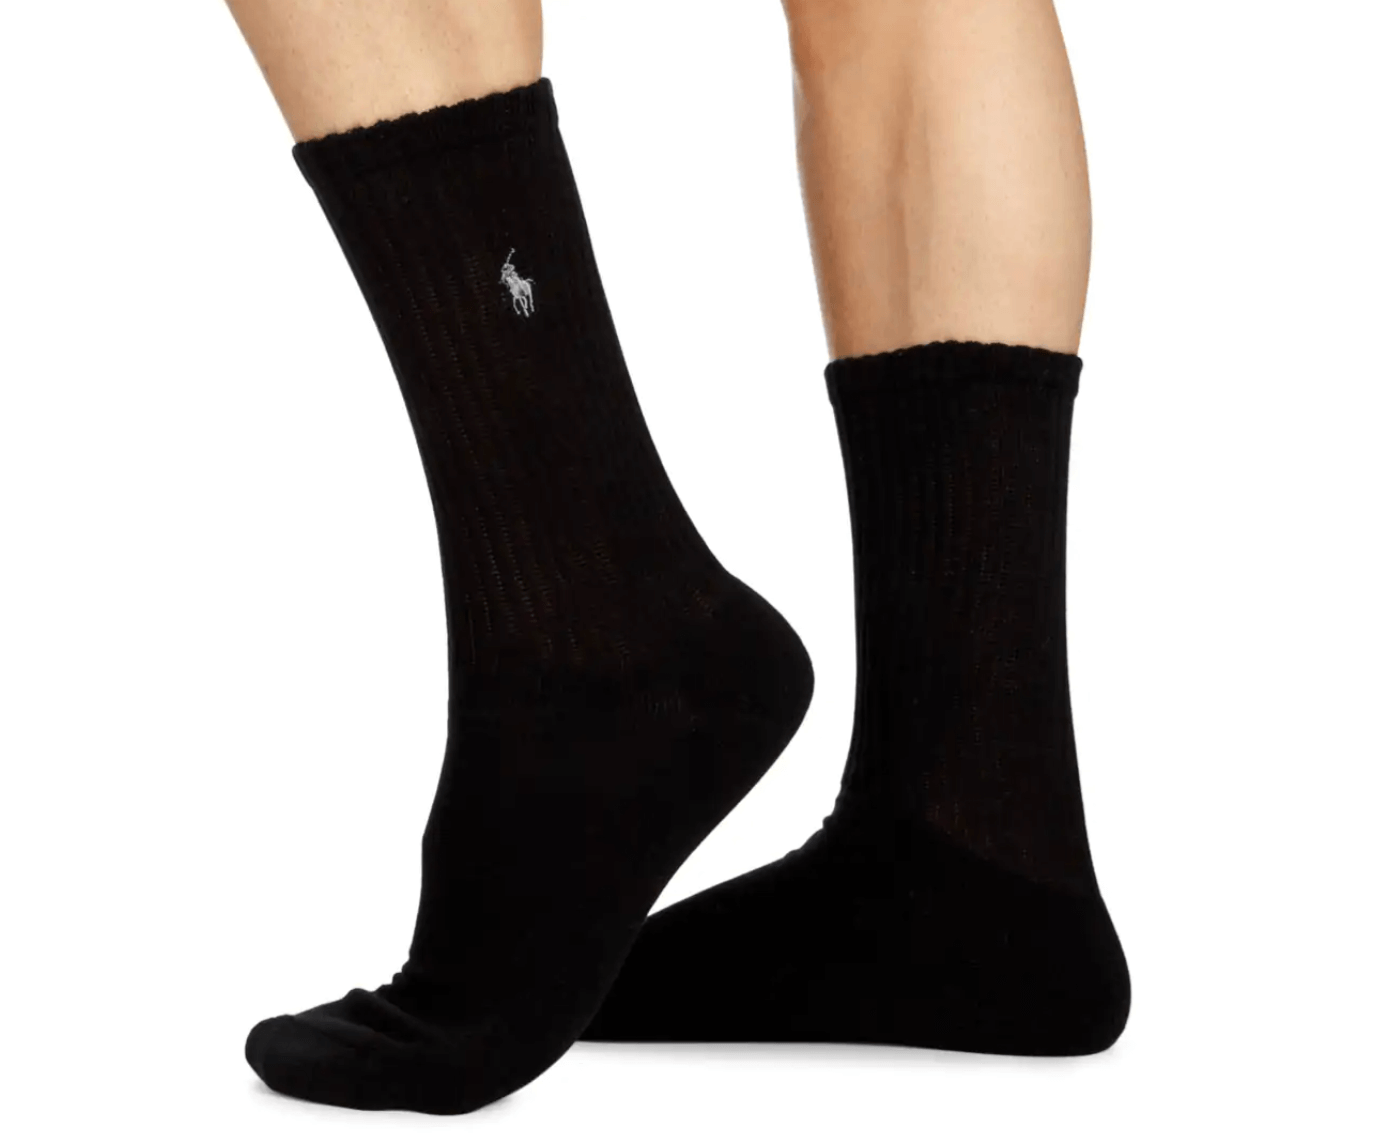 Polo Ralph Lauren Men's Rib Crew Socks 6-Pack, Size US 10-13 - Black